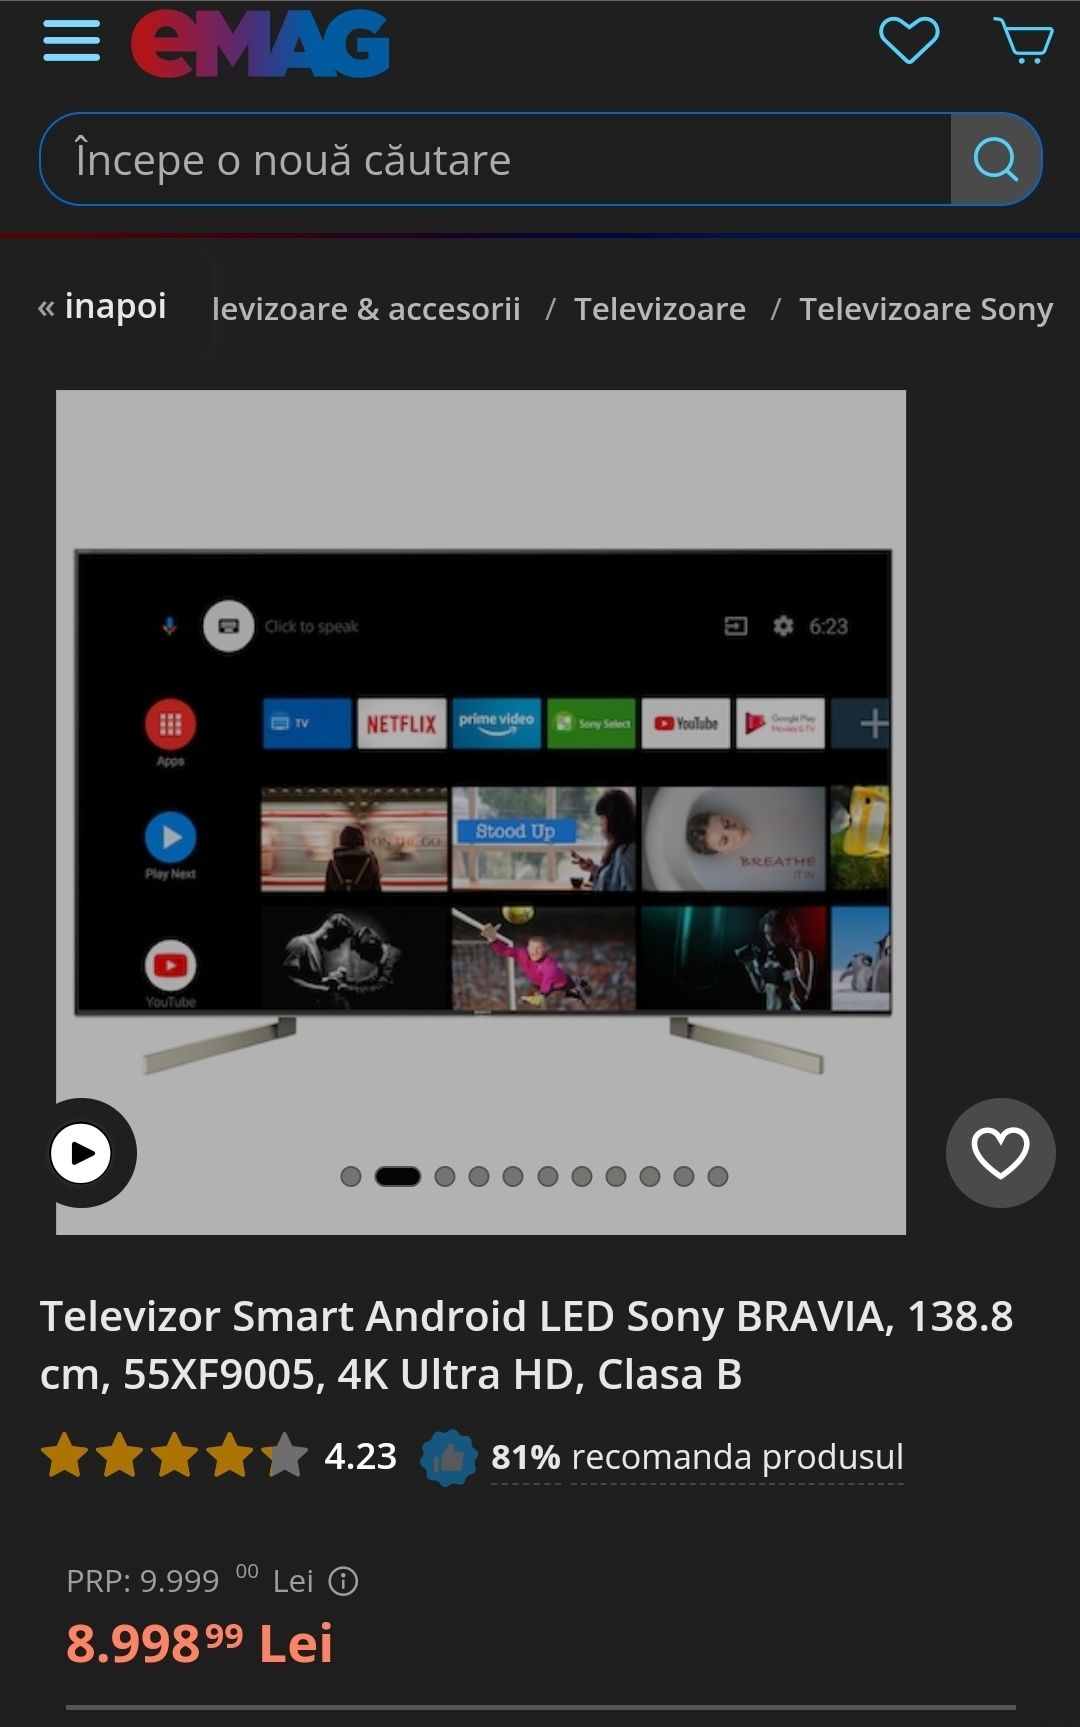 Ofertă! Preț fix! Televizor Smart Android LED Sony BRAVIA, 138.8 cm, 5